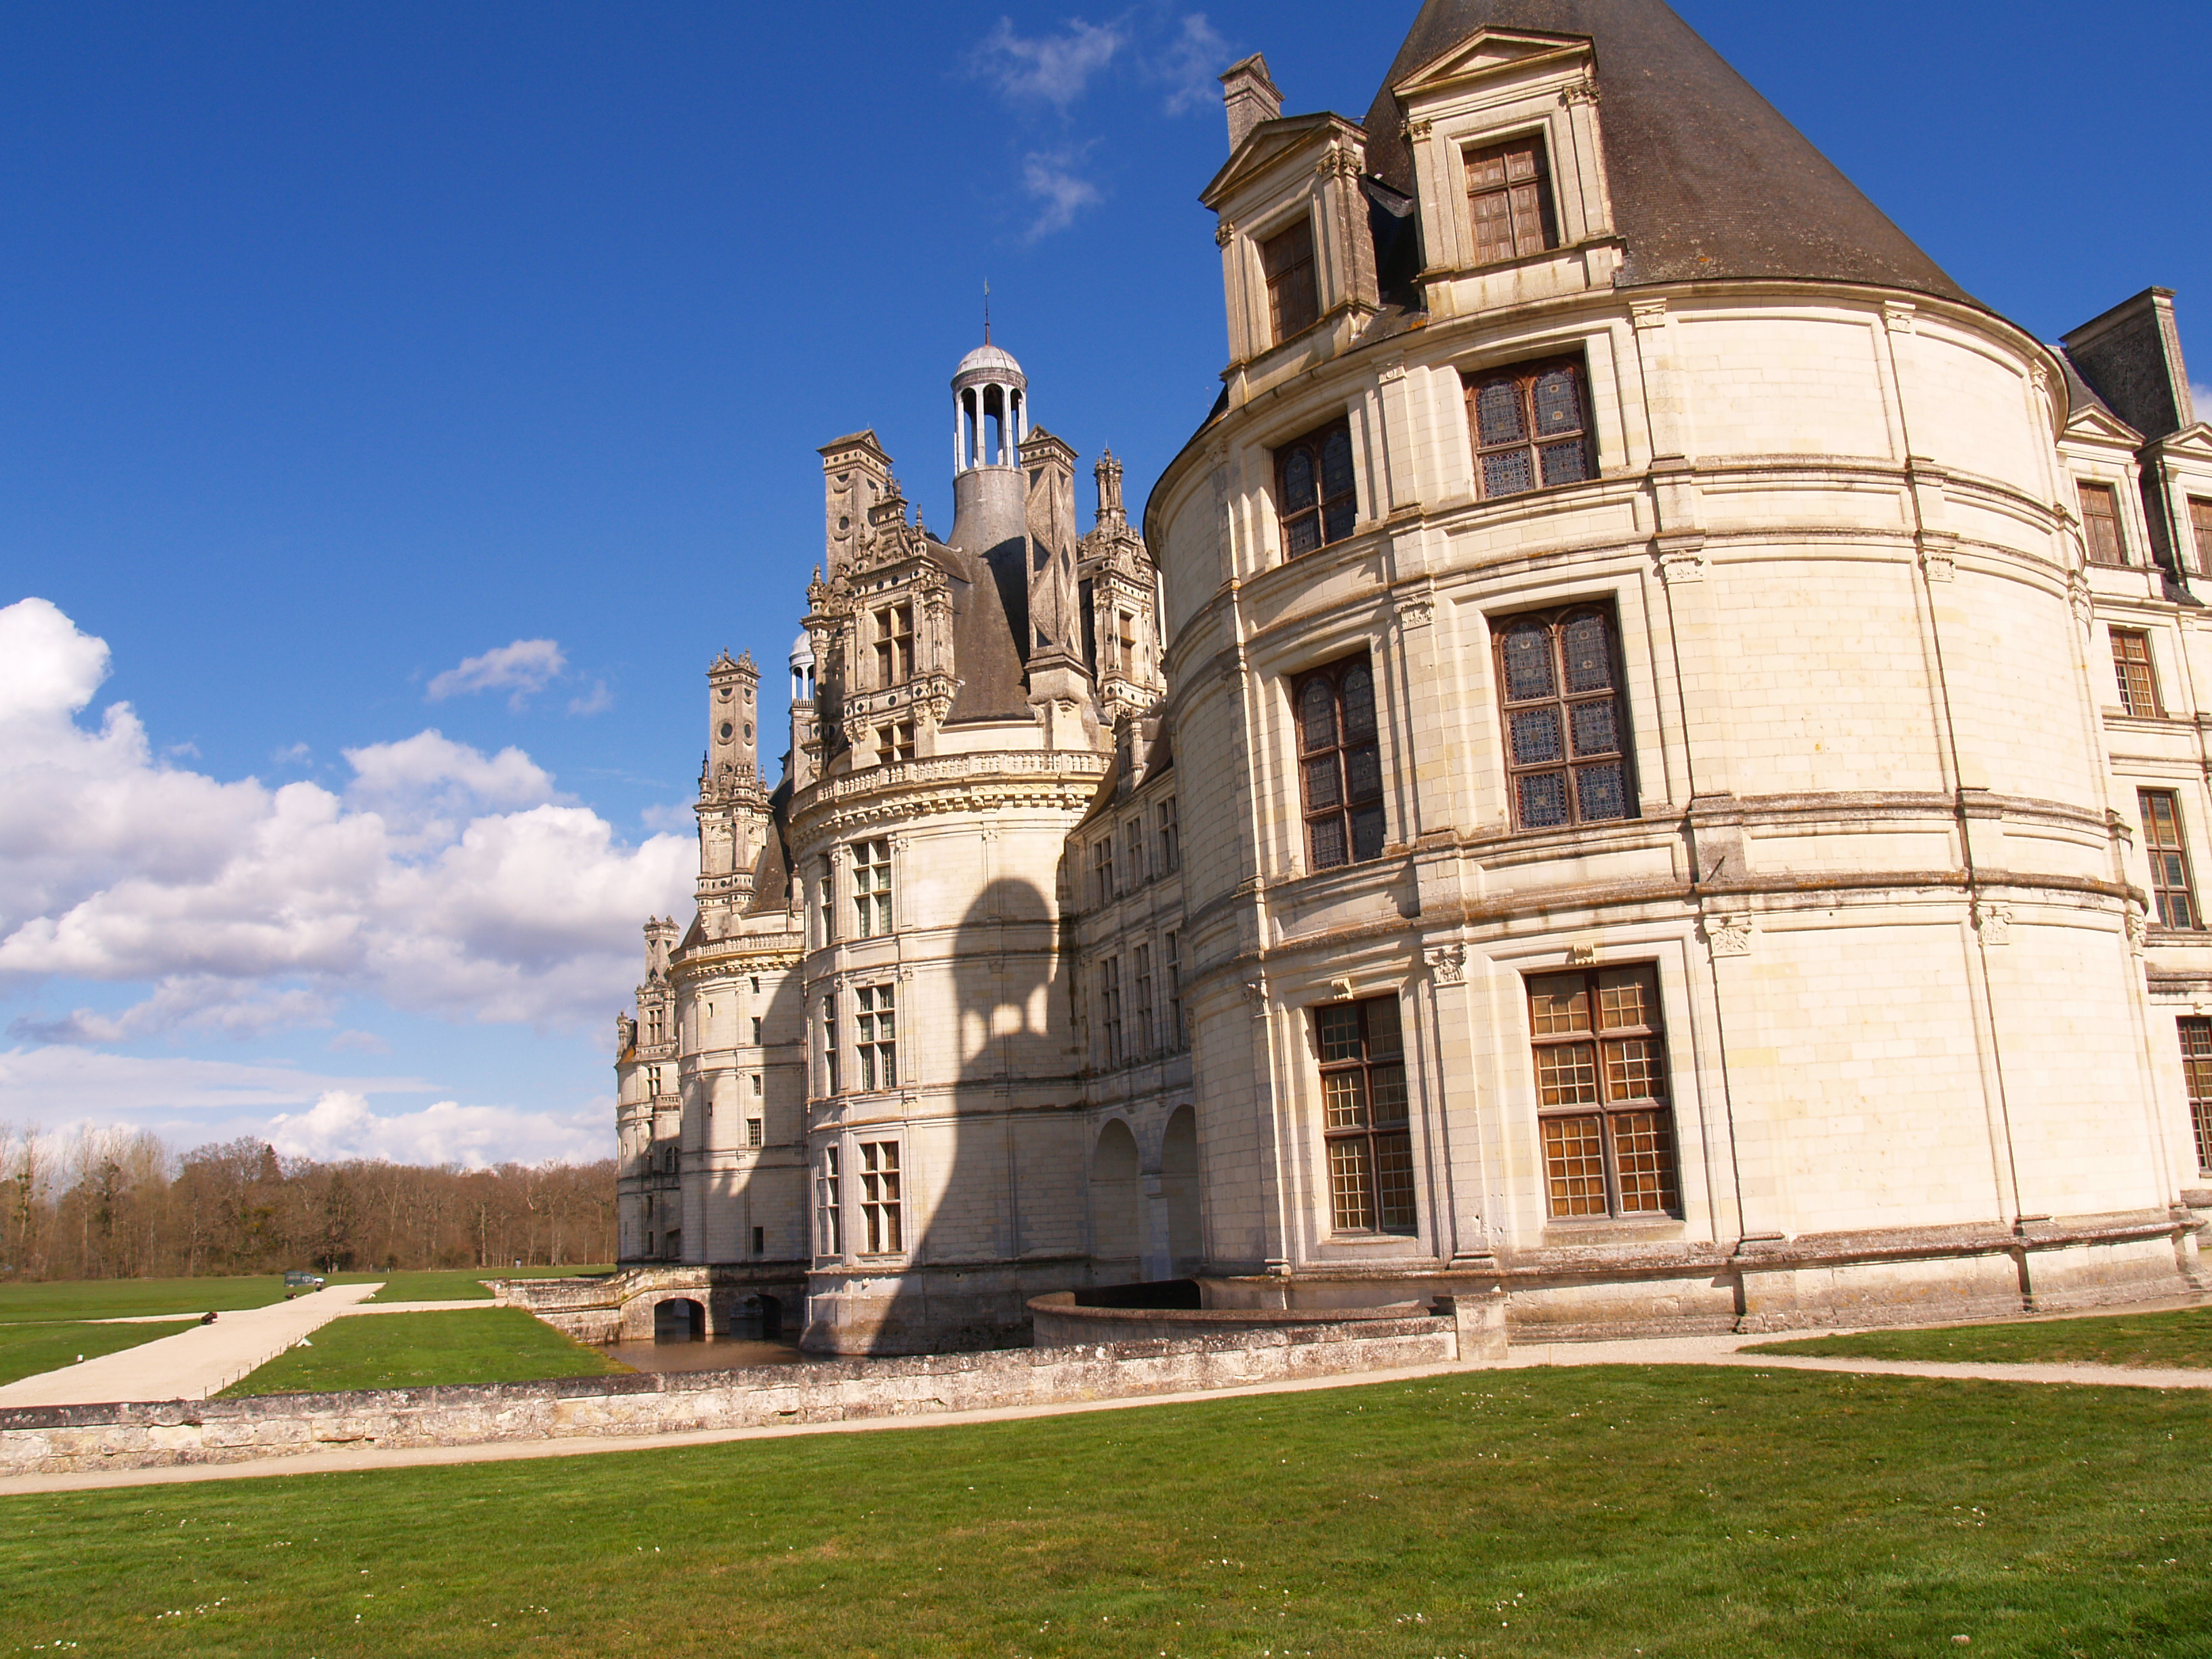 El Castillo de Chambord, de estilo renacentista, a 30 kms de Orleans